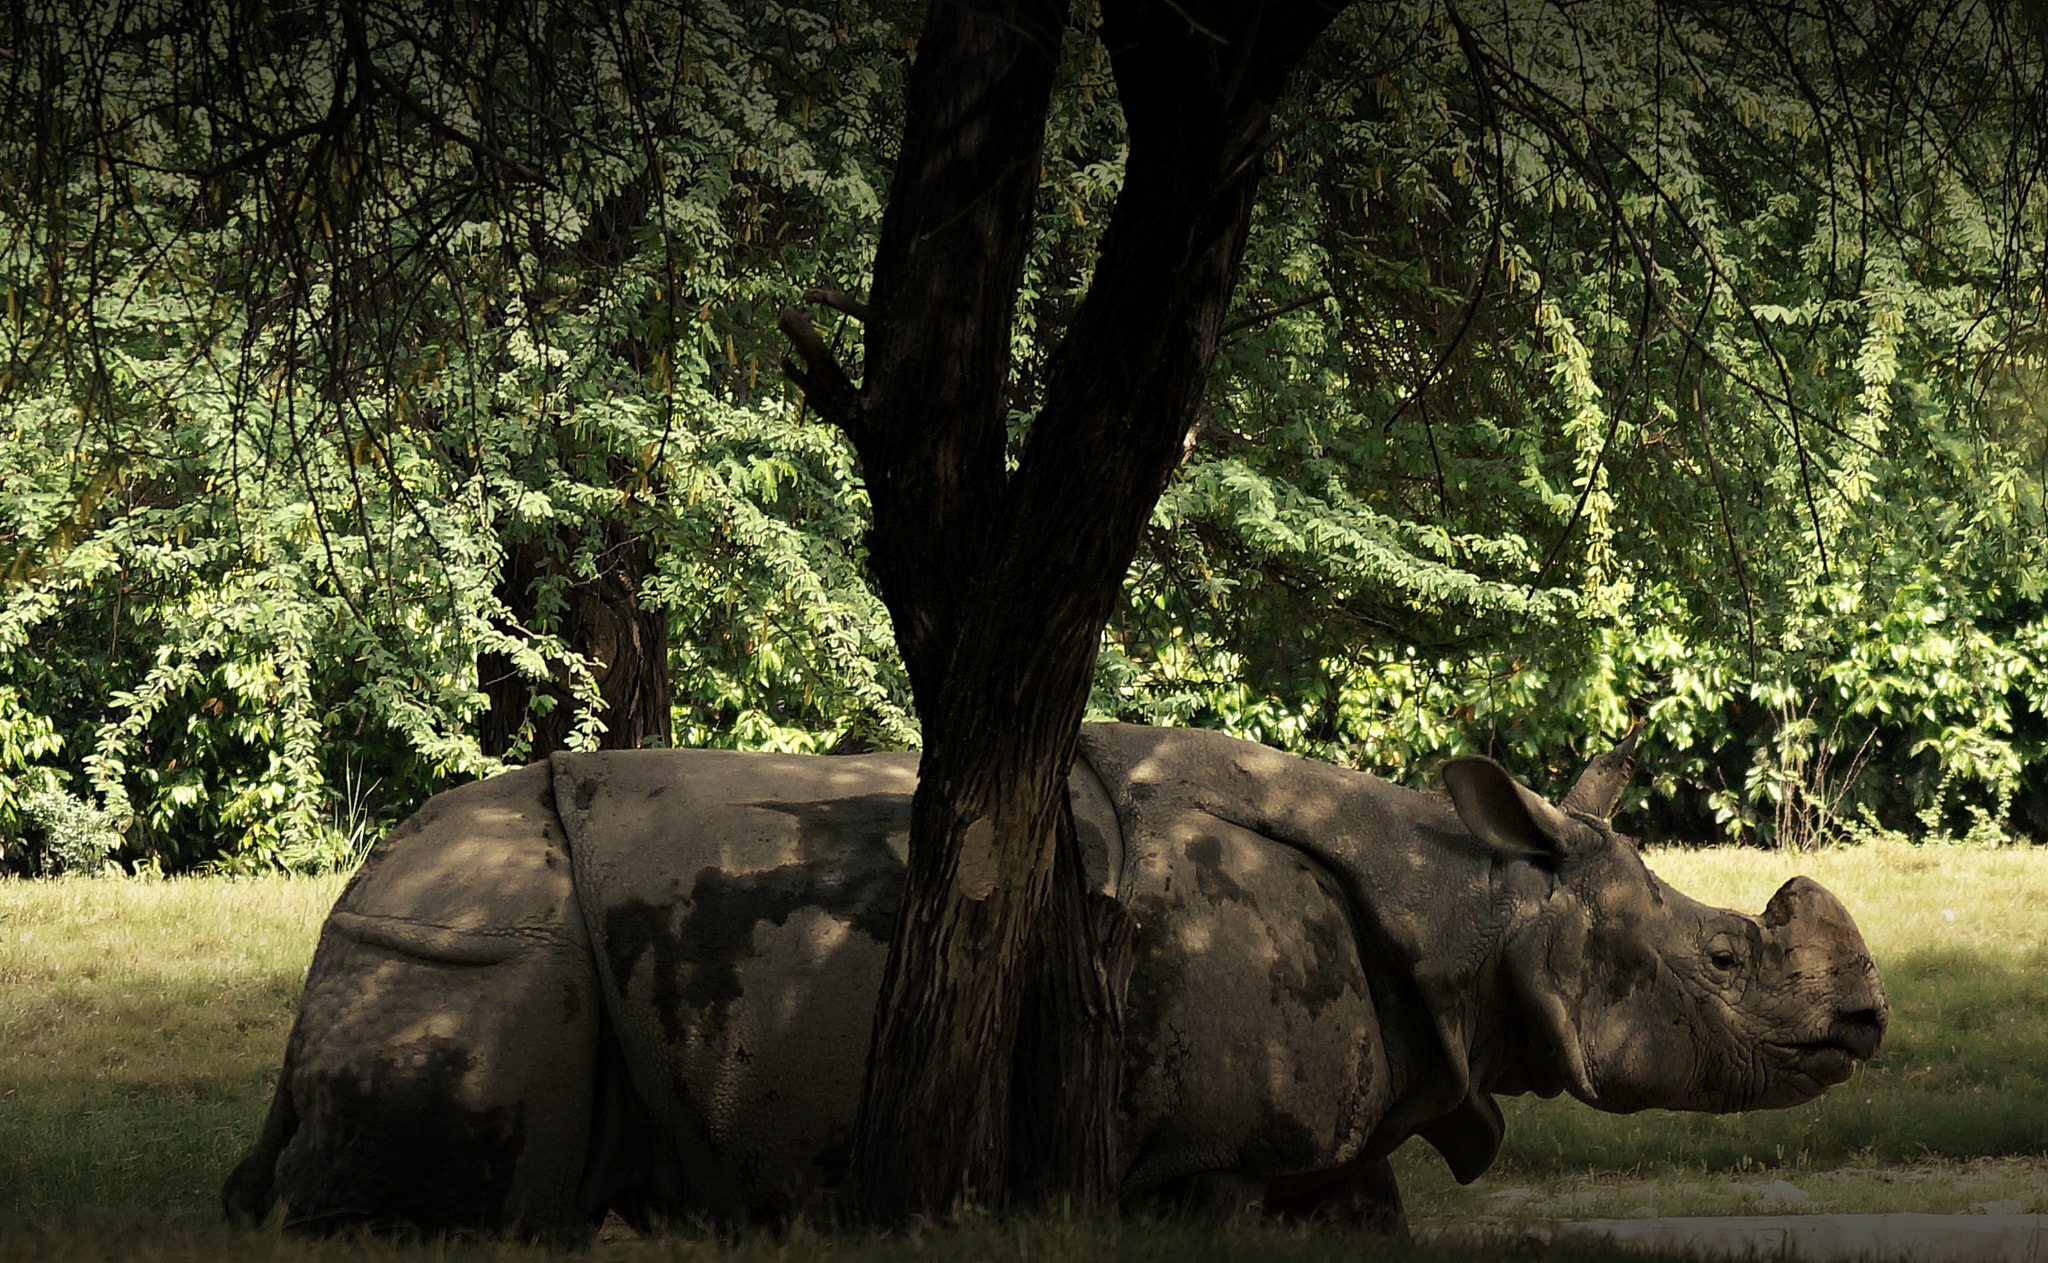 Sony SLT-A57 sample photo. The rhinoceros photography